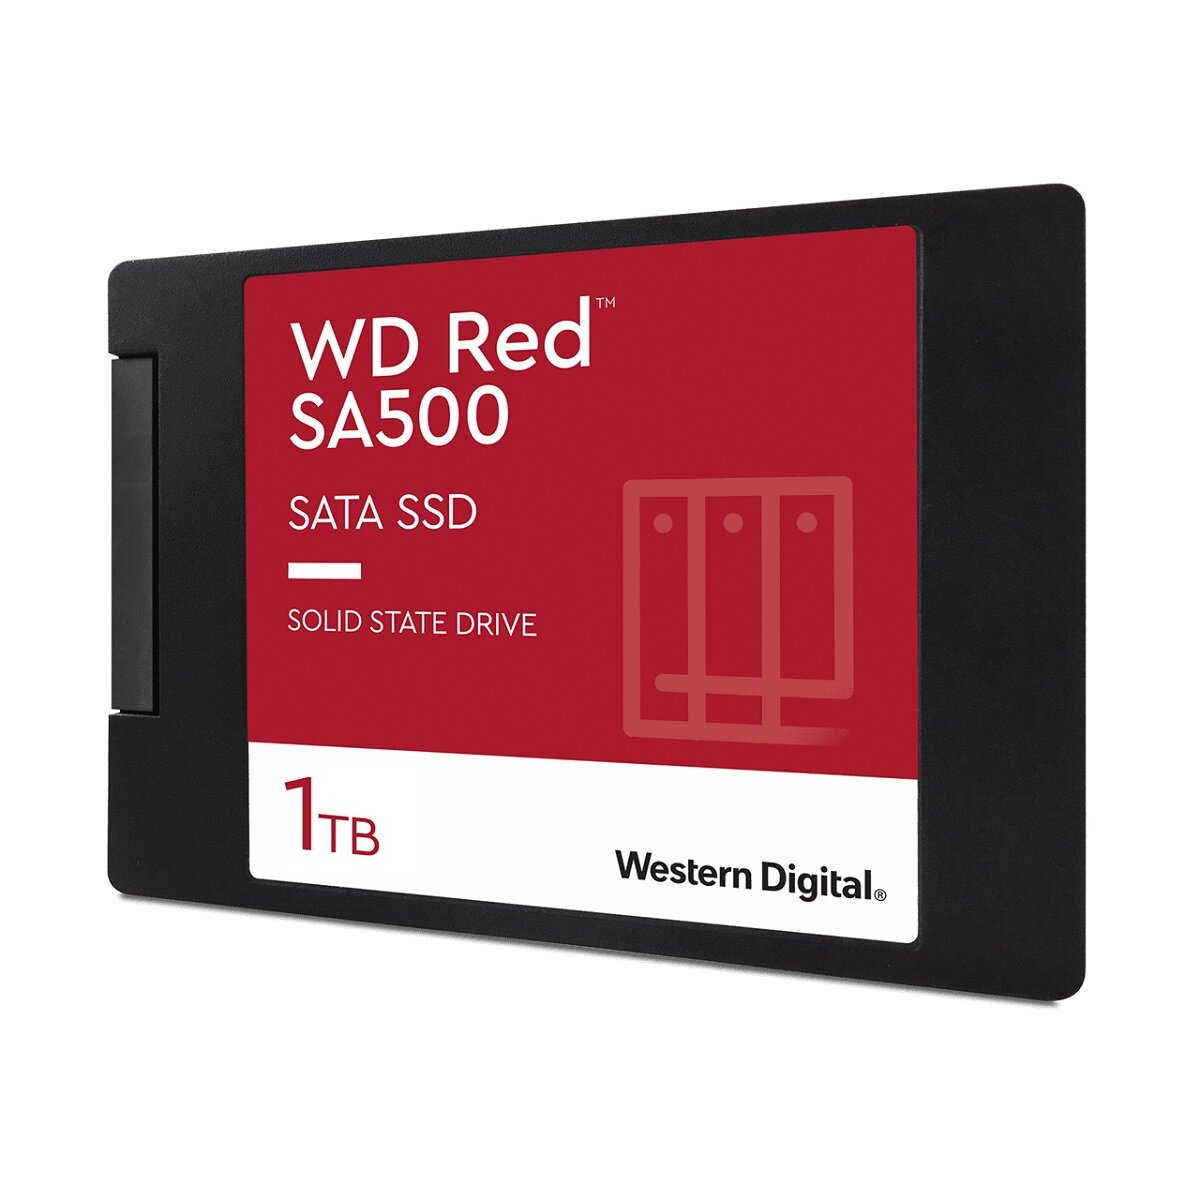 Dysk SSD WD Red SA500 1TB WDS100T1R0A widok z boku